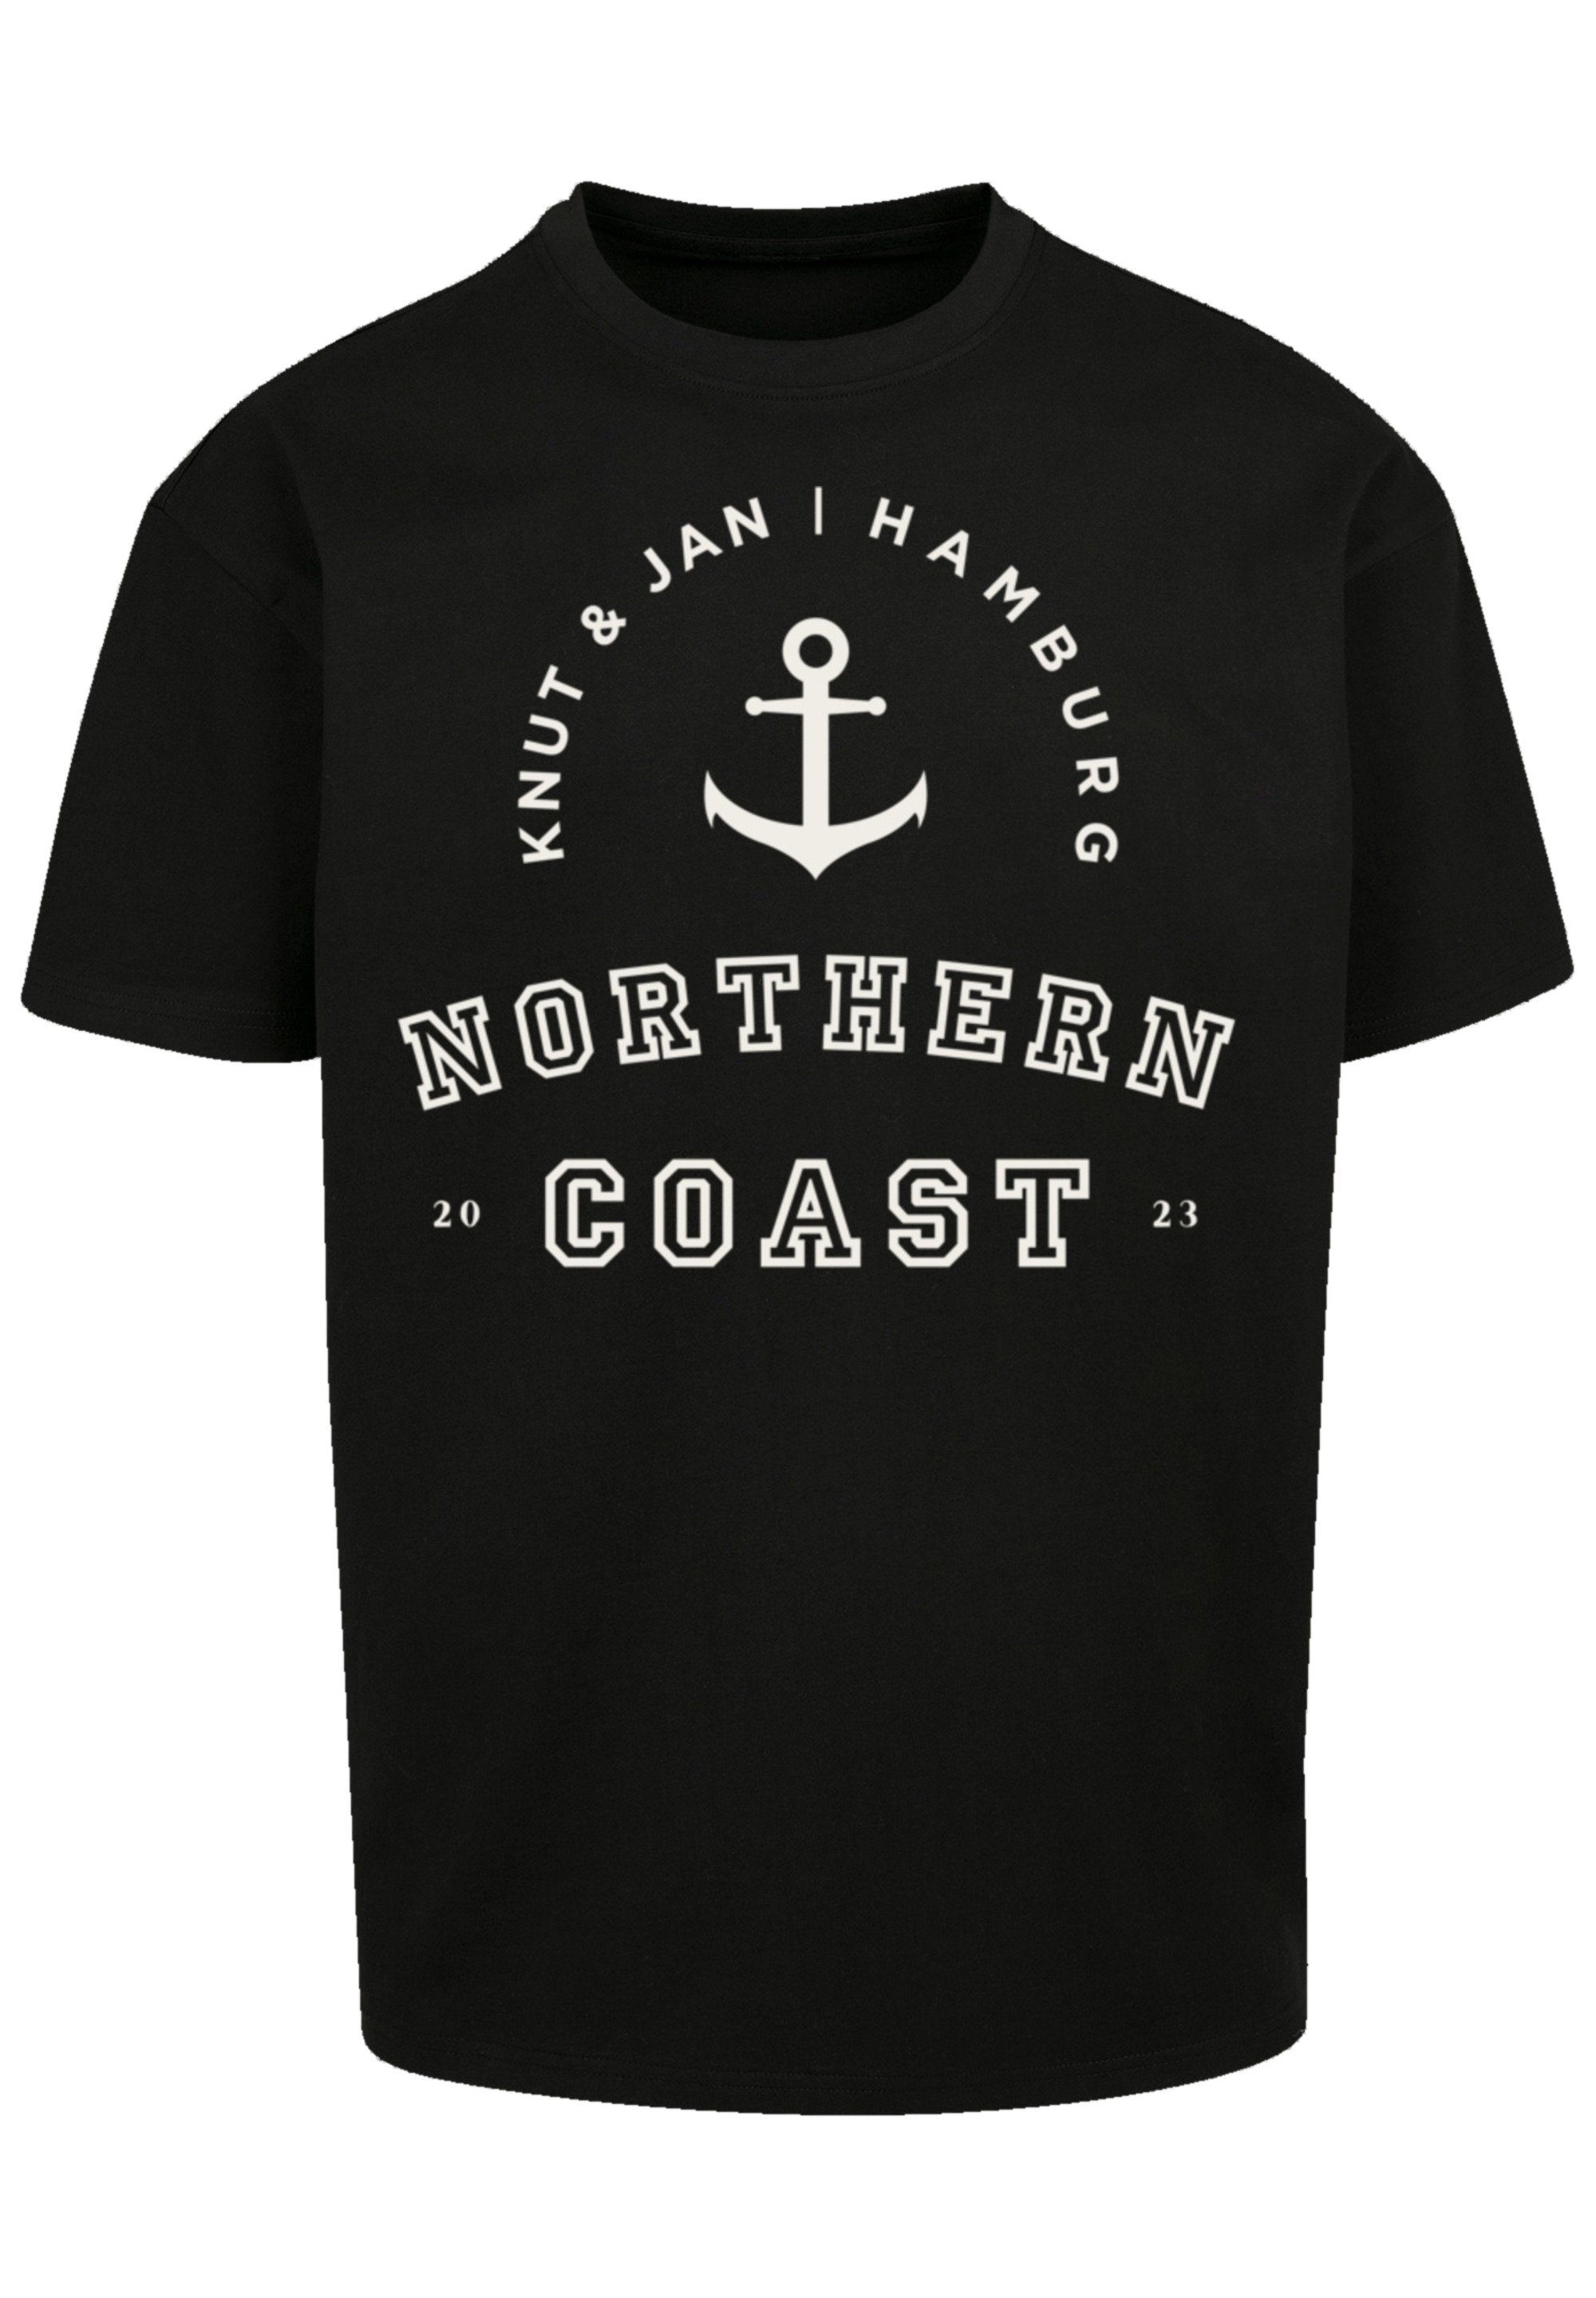 F4NT4STIC T-Shirt Northern schwarz Hamburg & Jan Nordsee Knut Print Coast